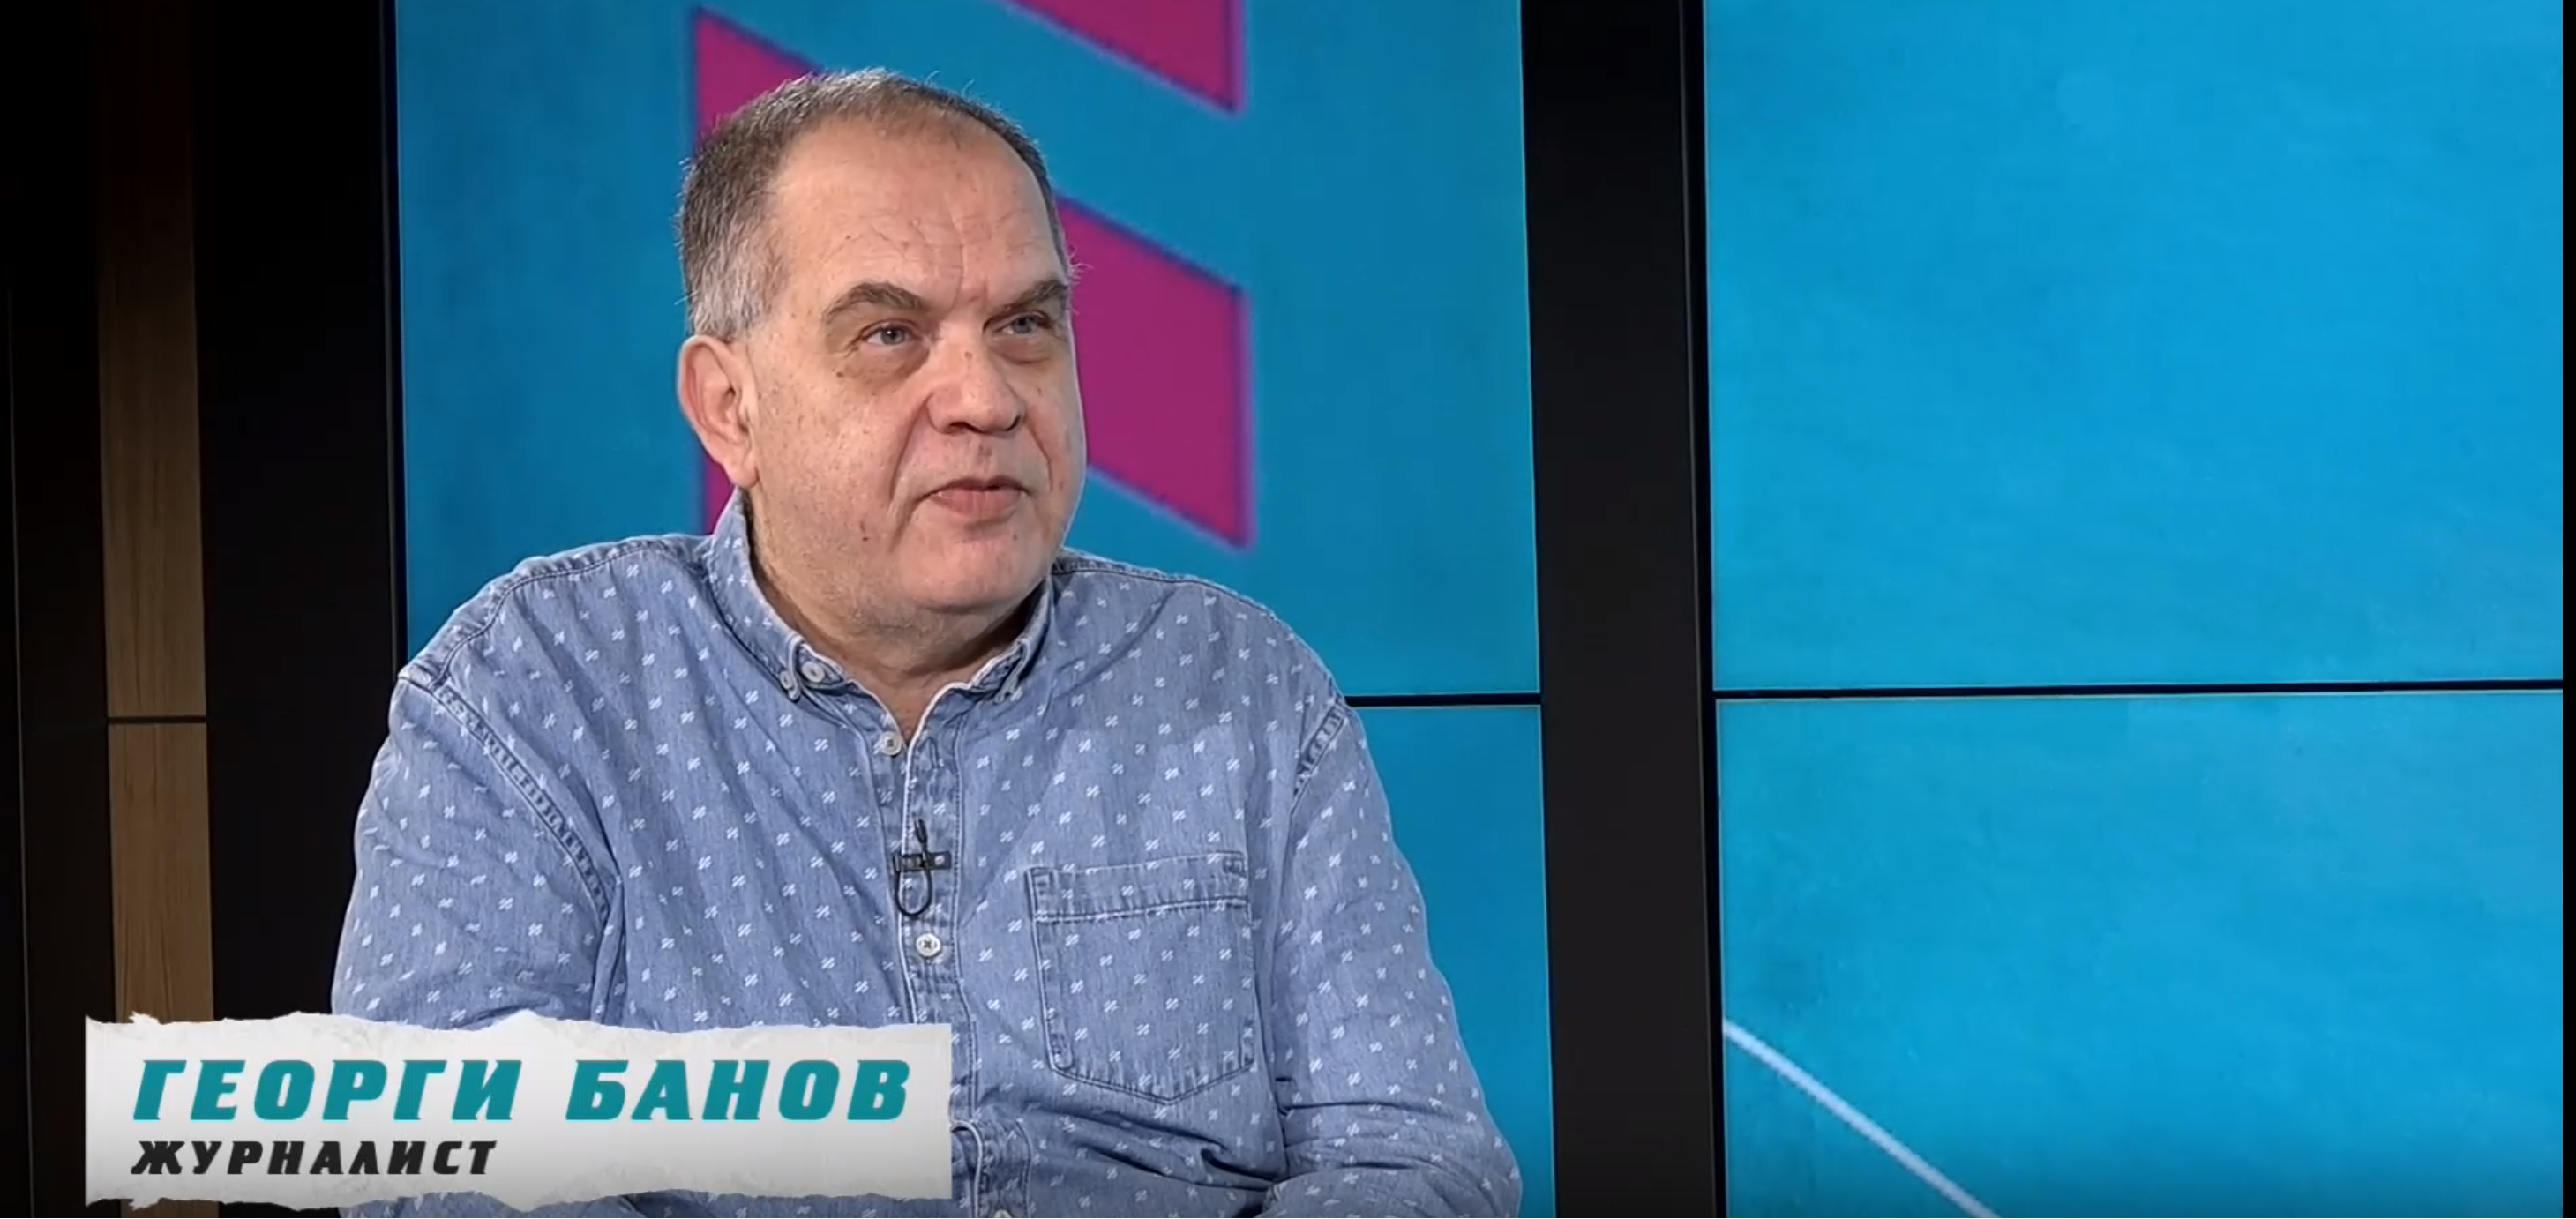 Георги Банов е спортен журналист със солиден стаж. Отразявал е